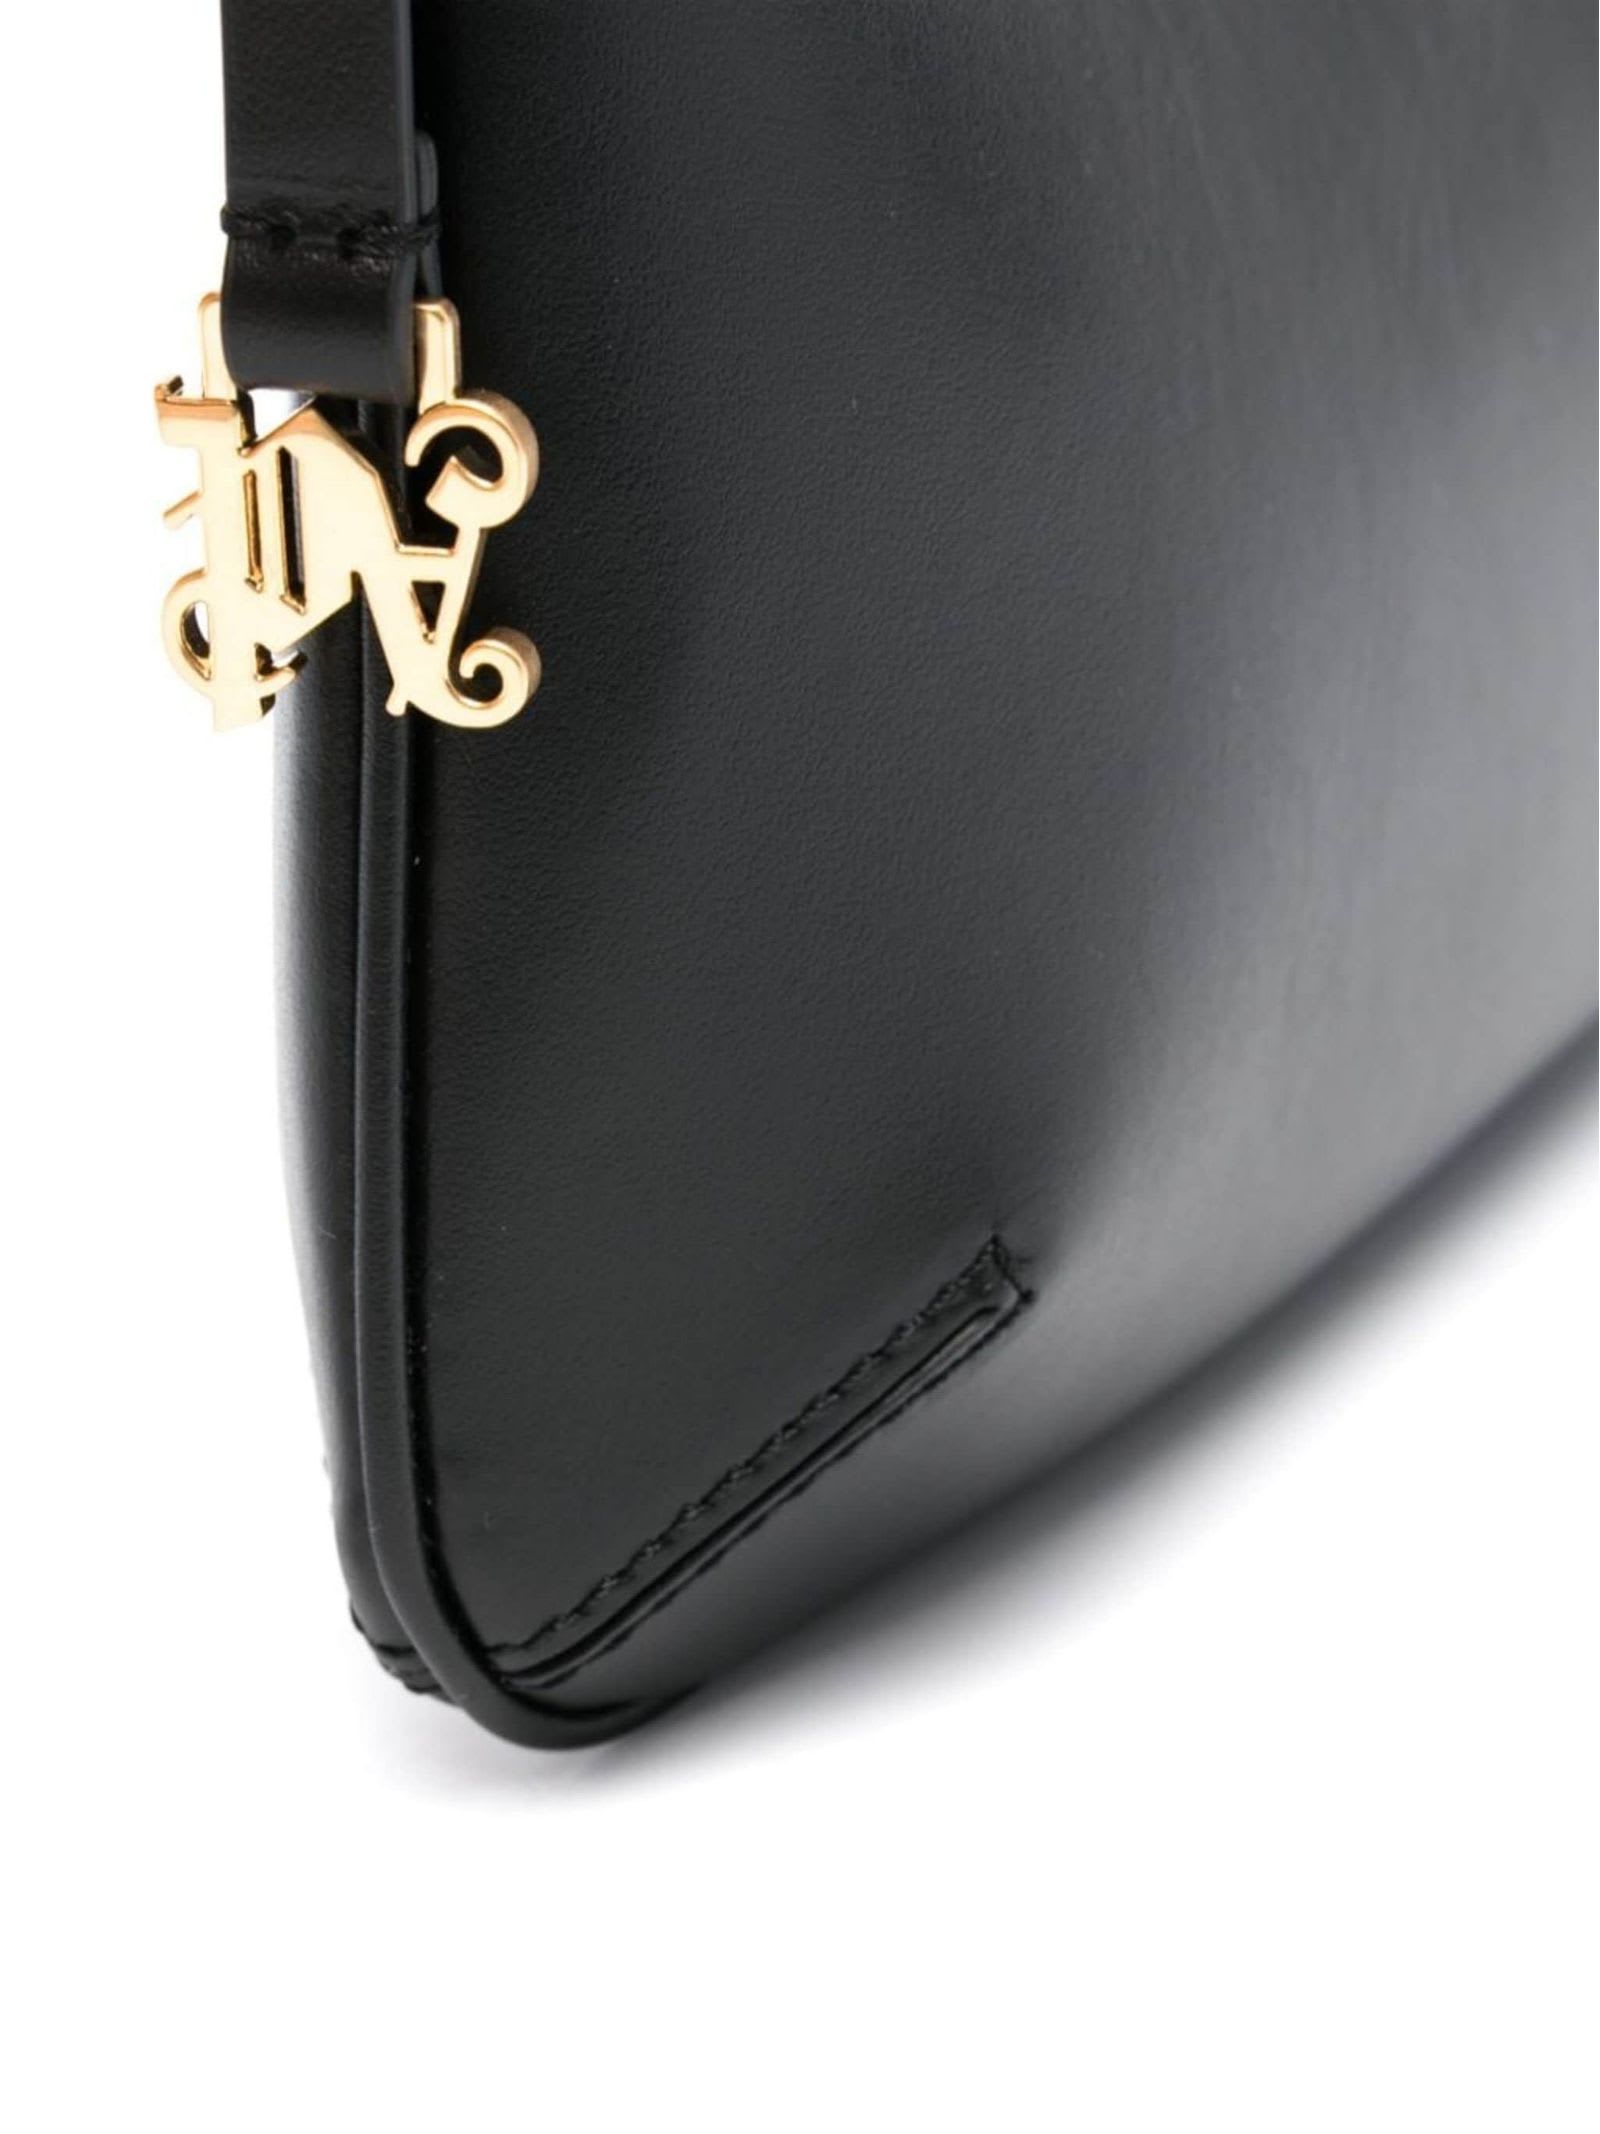 Shop Palm Angels Black Giorgina Leather Shoulder Bag